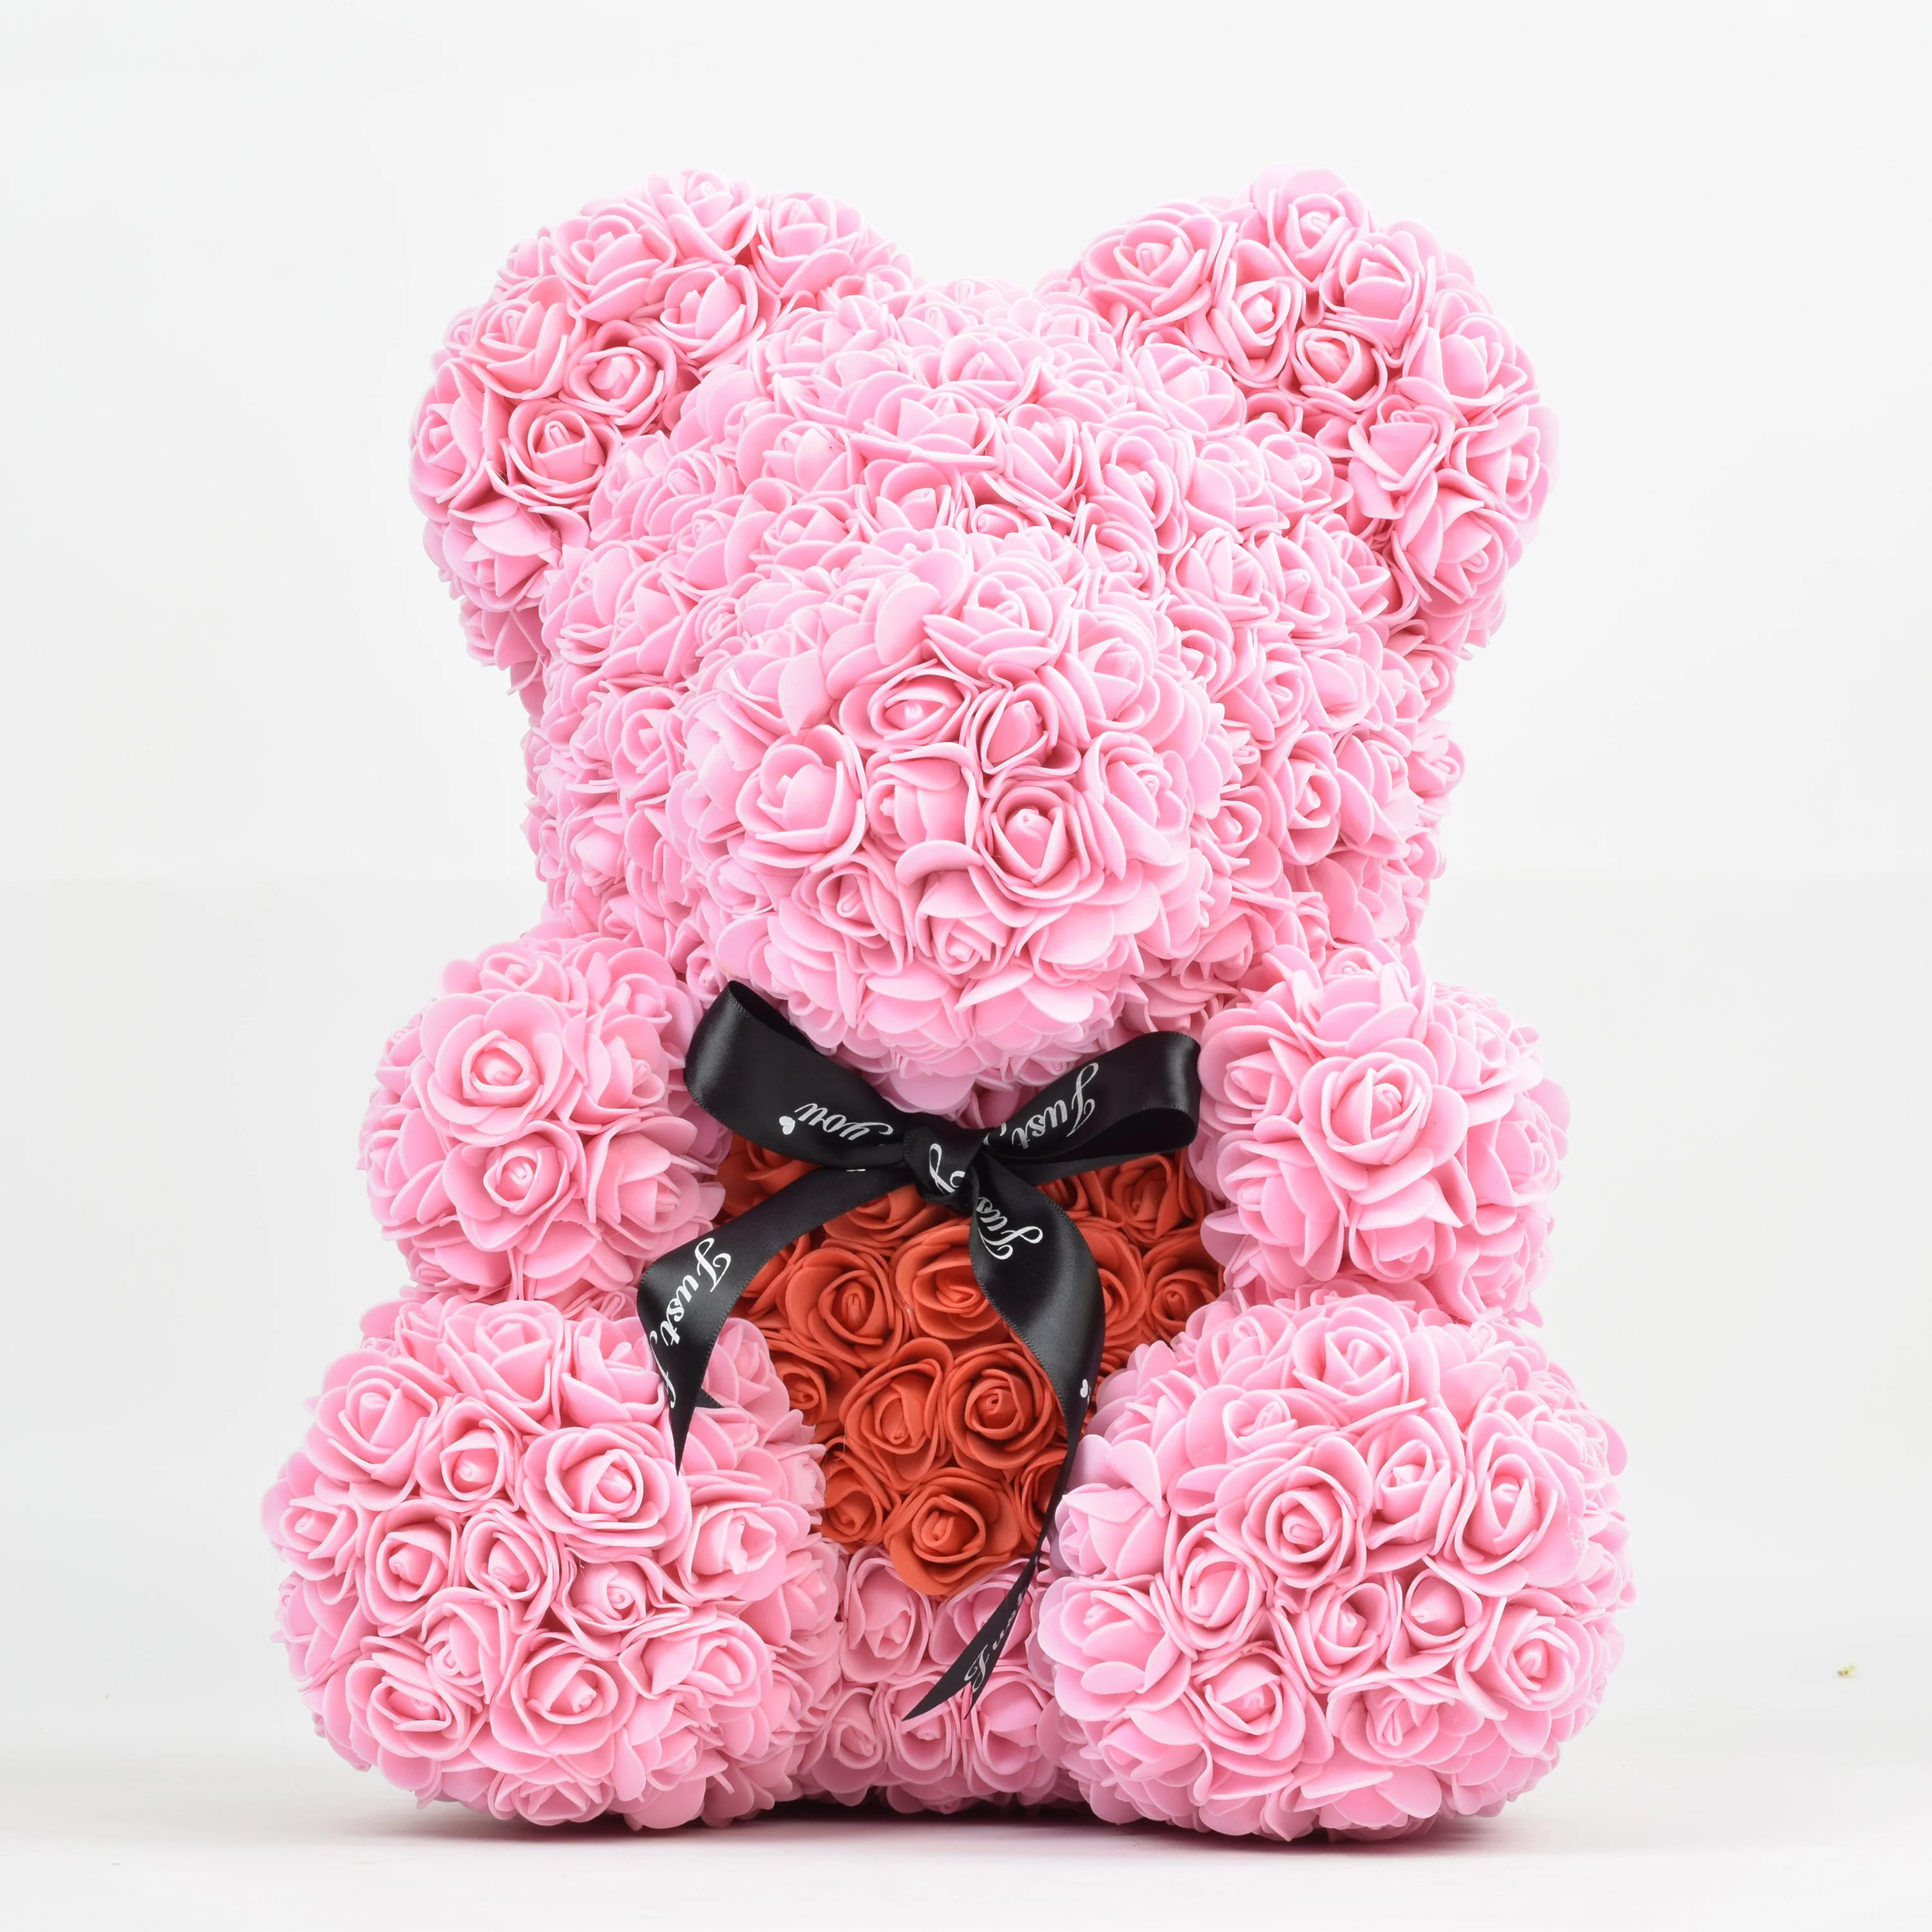 40厘米工厂供应批发装饰 pe 泡沫泰迪玫瑰熊庆祝婚礼情人节的女朋友的